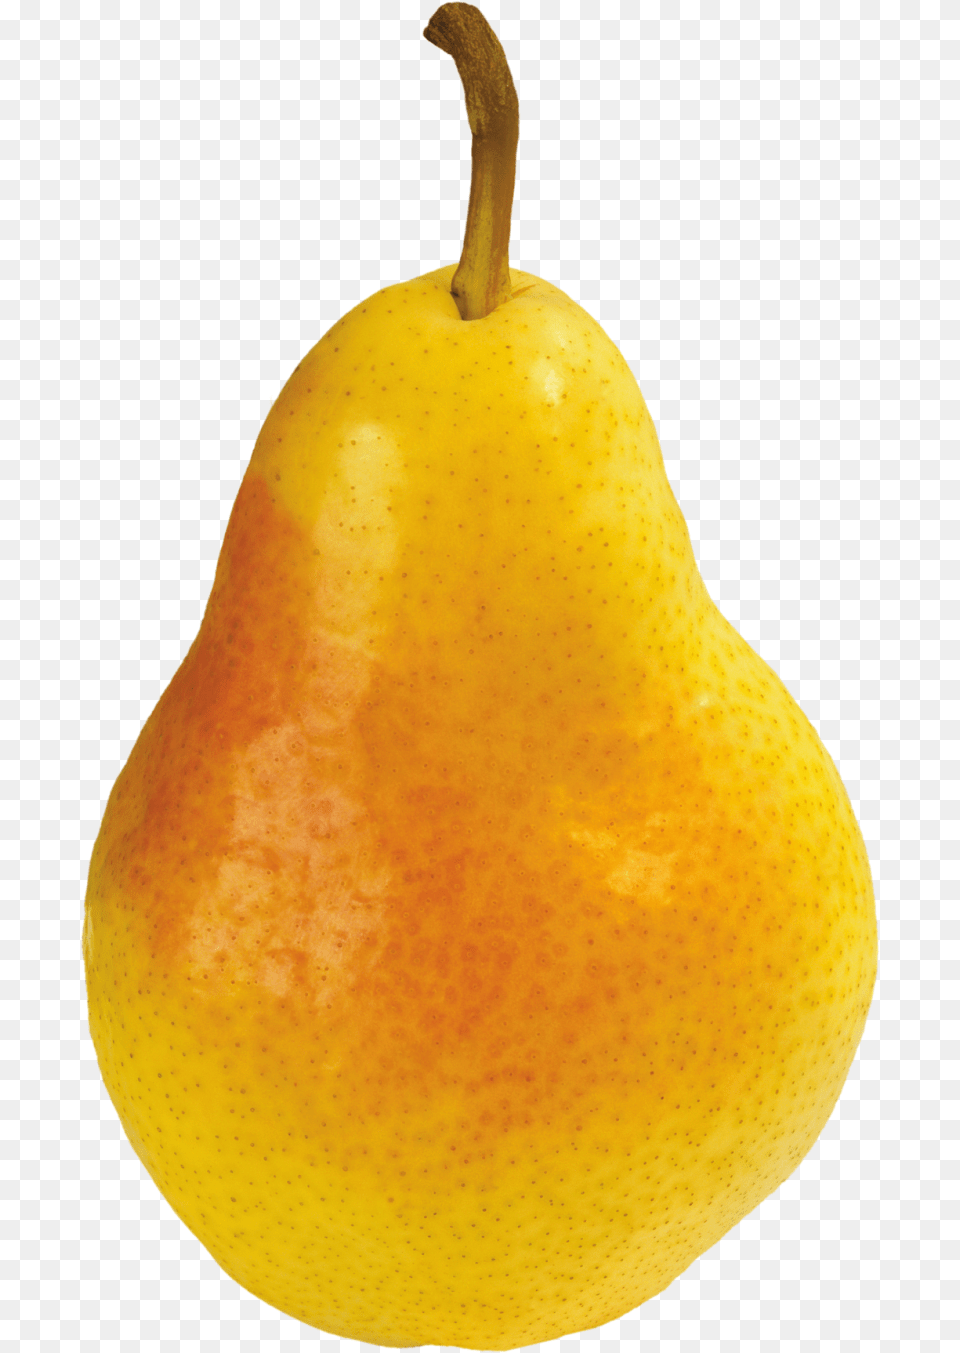 Pear Grusha, Food, Fruit, Plant, Produce Png Image